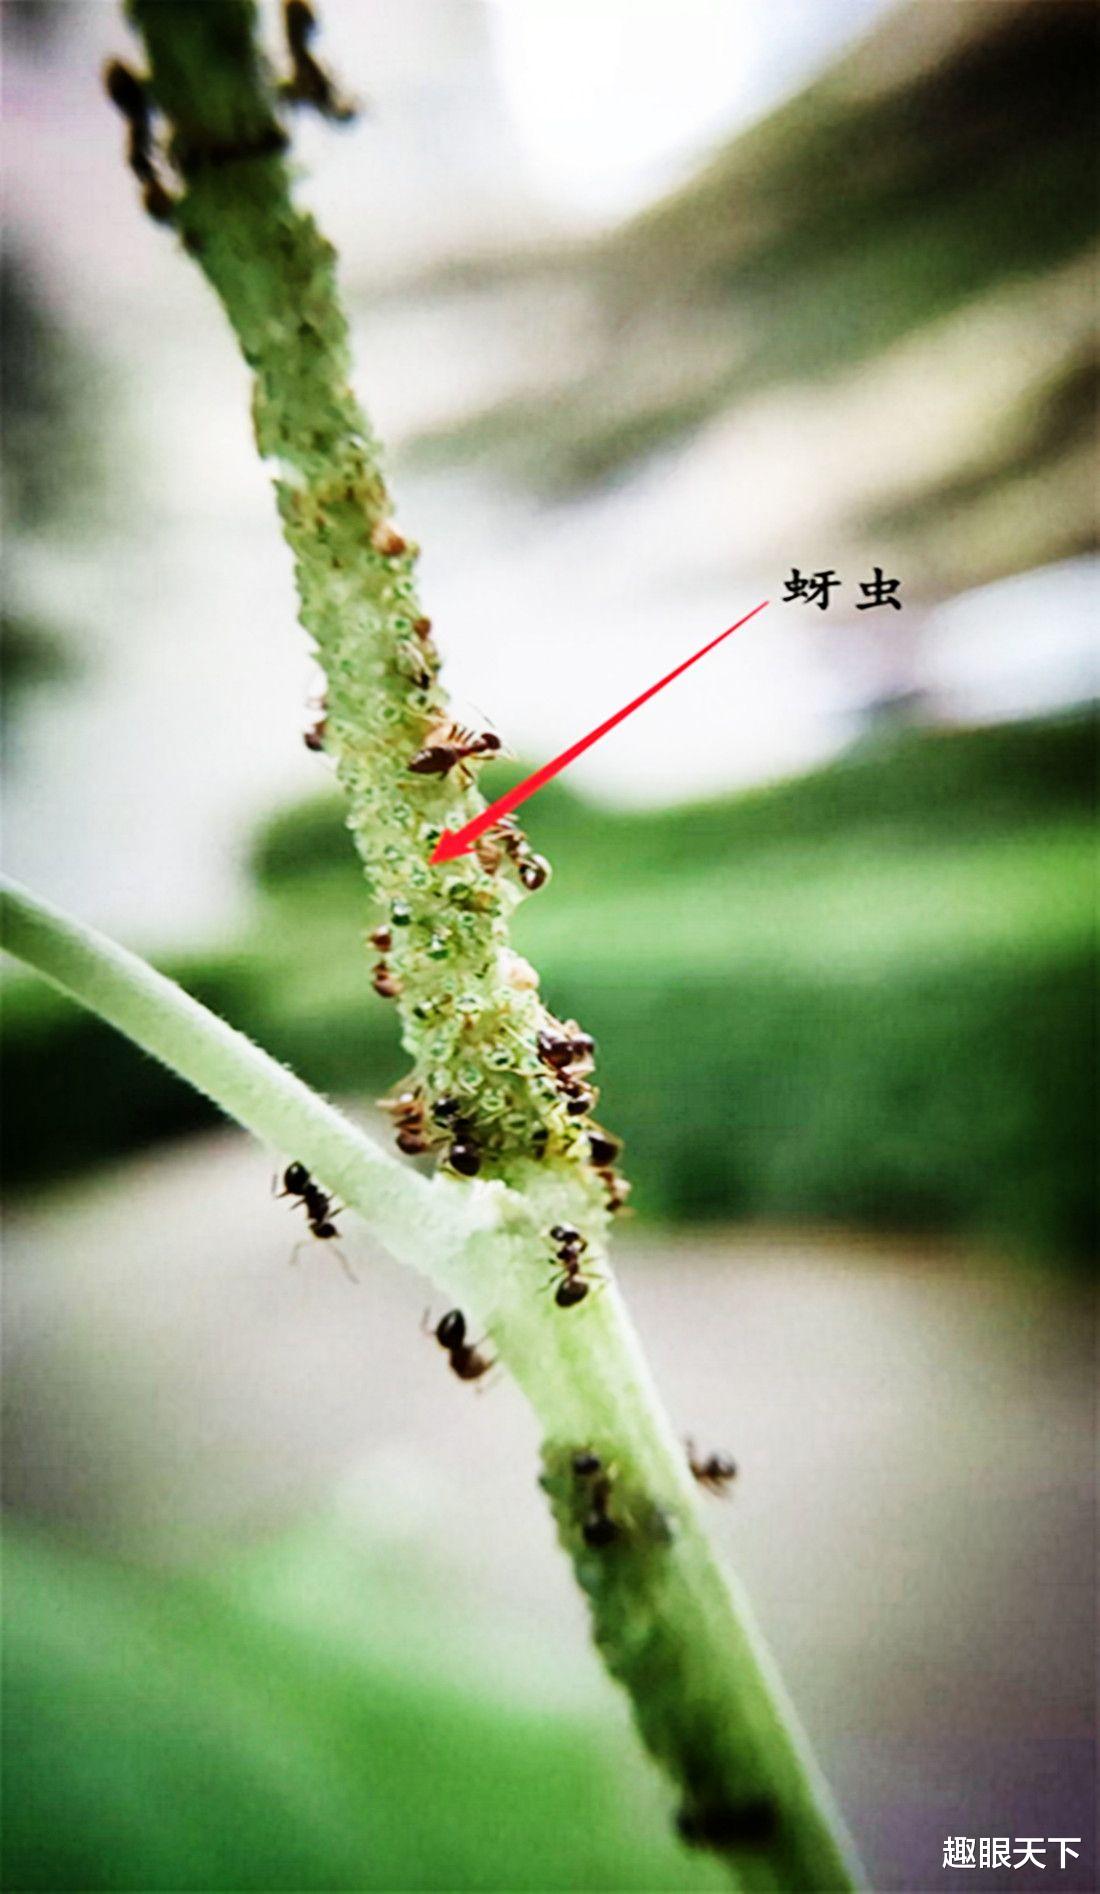 科学家 蚂蚁已进入农耕社会？科学家发现蚂蚁已学会放牧和种植，引发热议